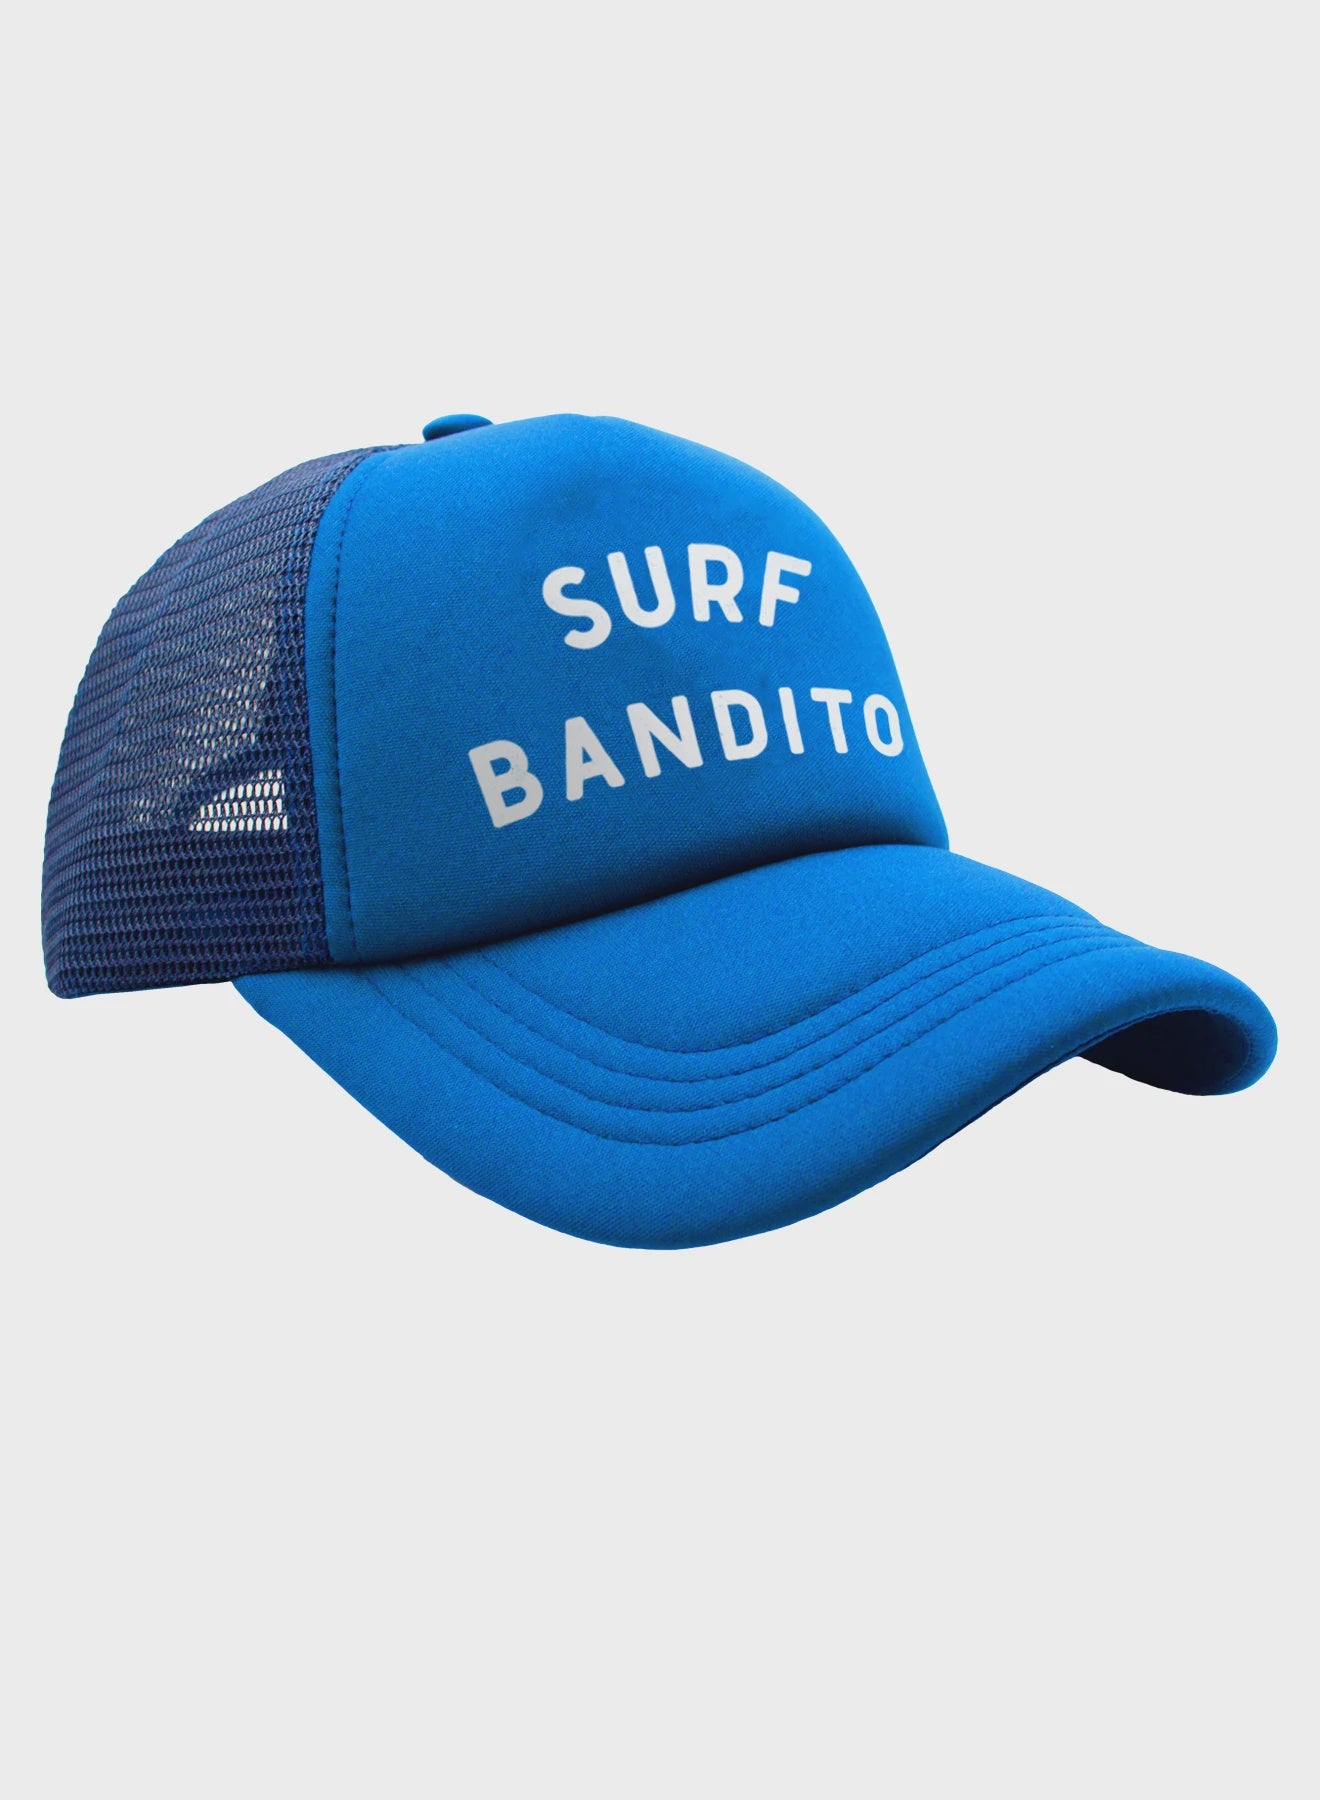 Feather 4 Arrow - Surf Bandito Hat - Ocean Blue